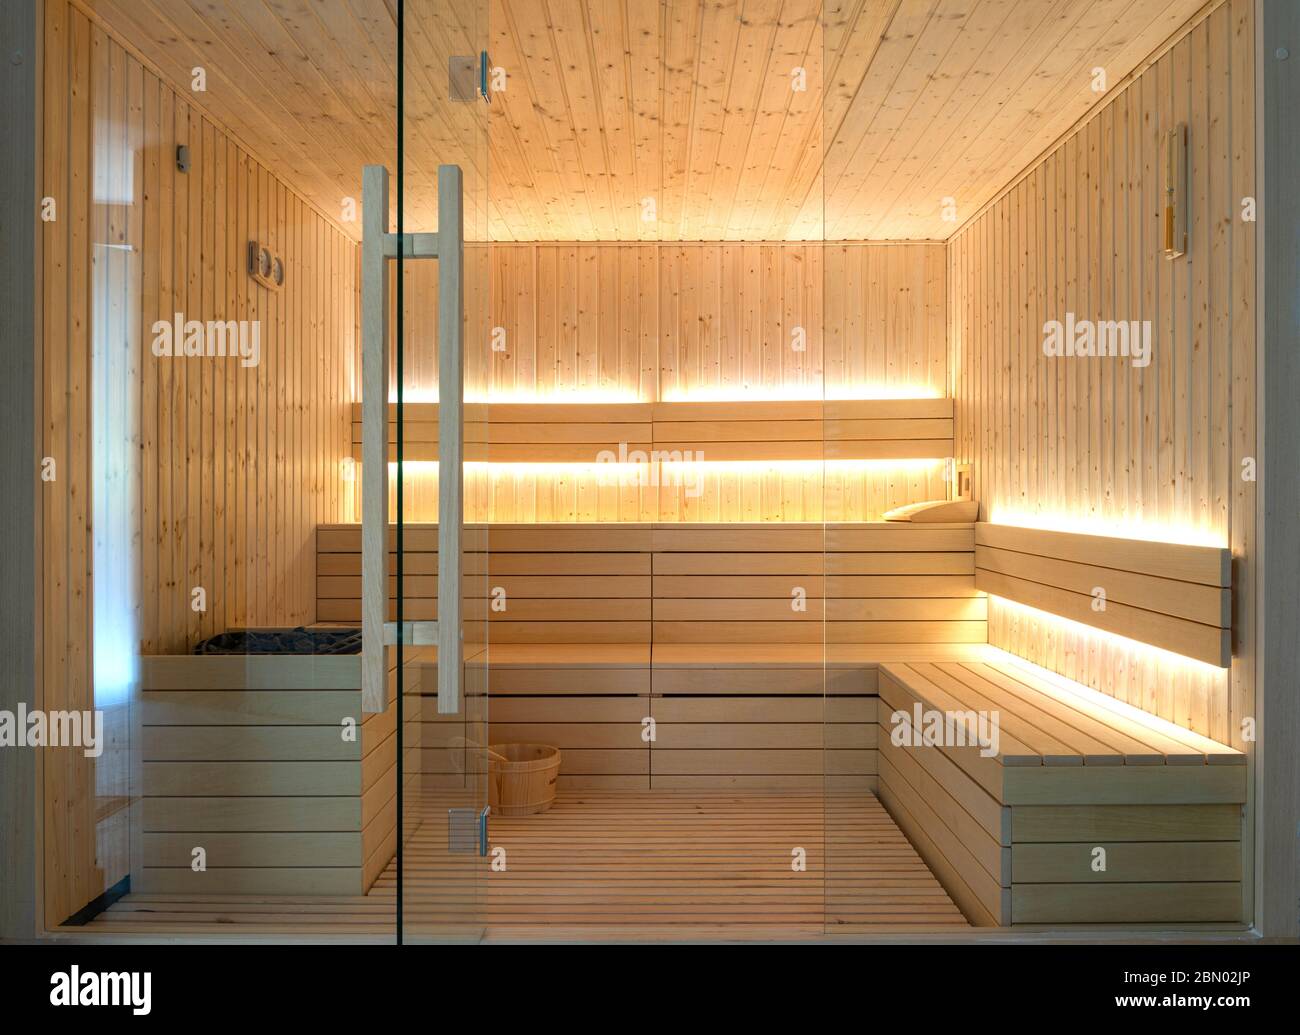 Vorderansicht des leeren finnischen Saunabereimes. Modernes Interieur aus Holz Spa-Kabine mit trockenem Dampf Stockfoto